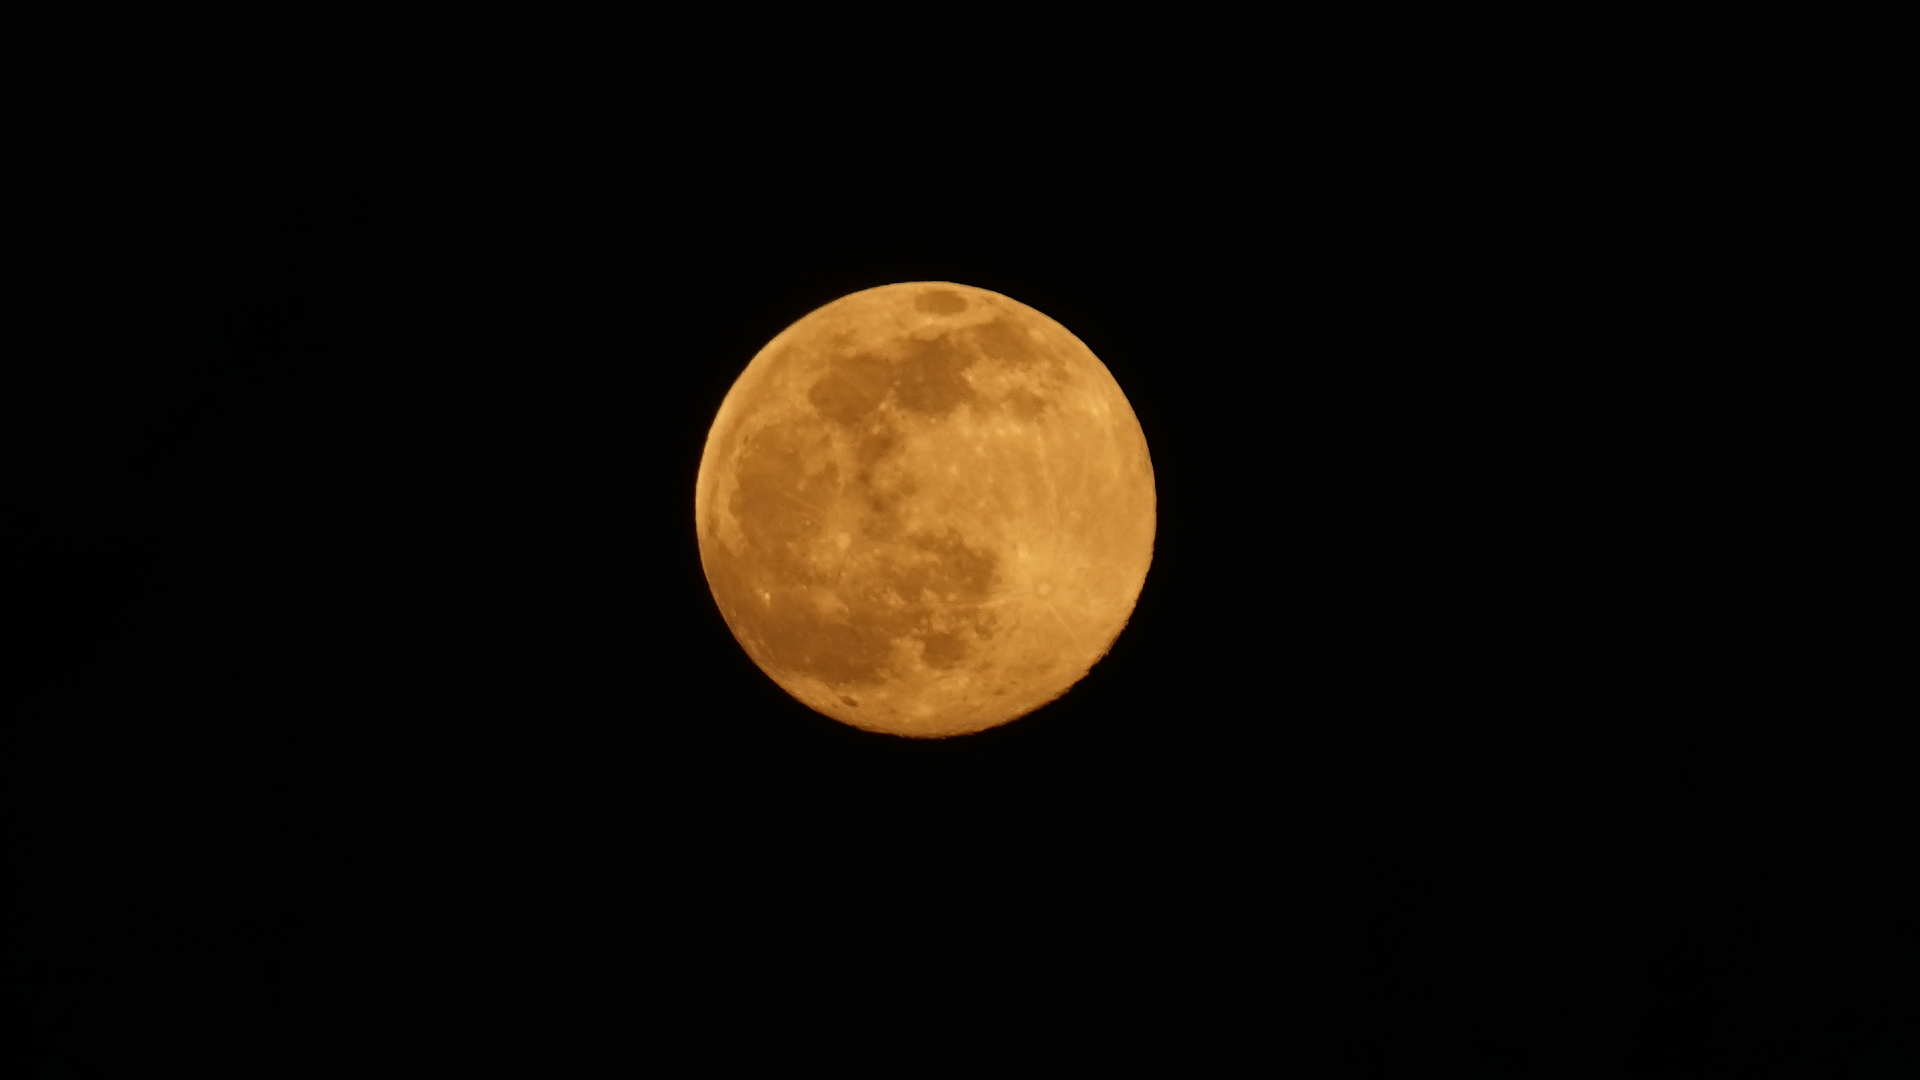 Fotostrecke Mond, Abbildung 26: 15 Stunden vor dem vollen Mond